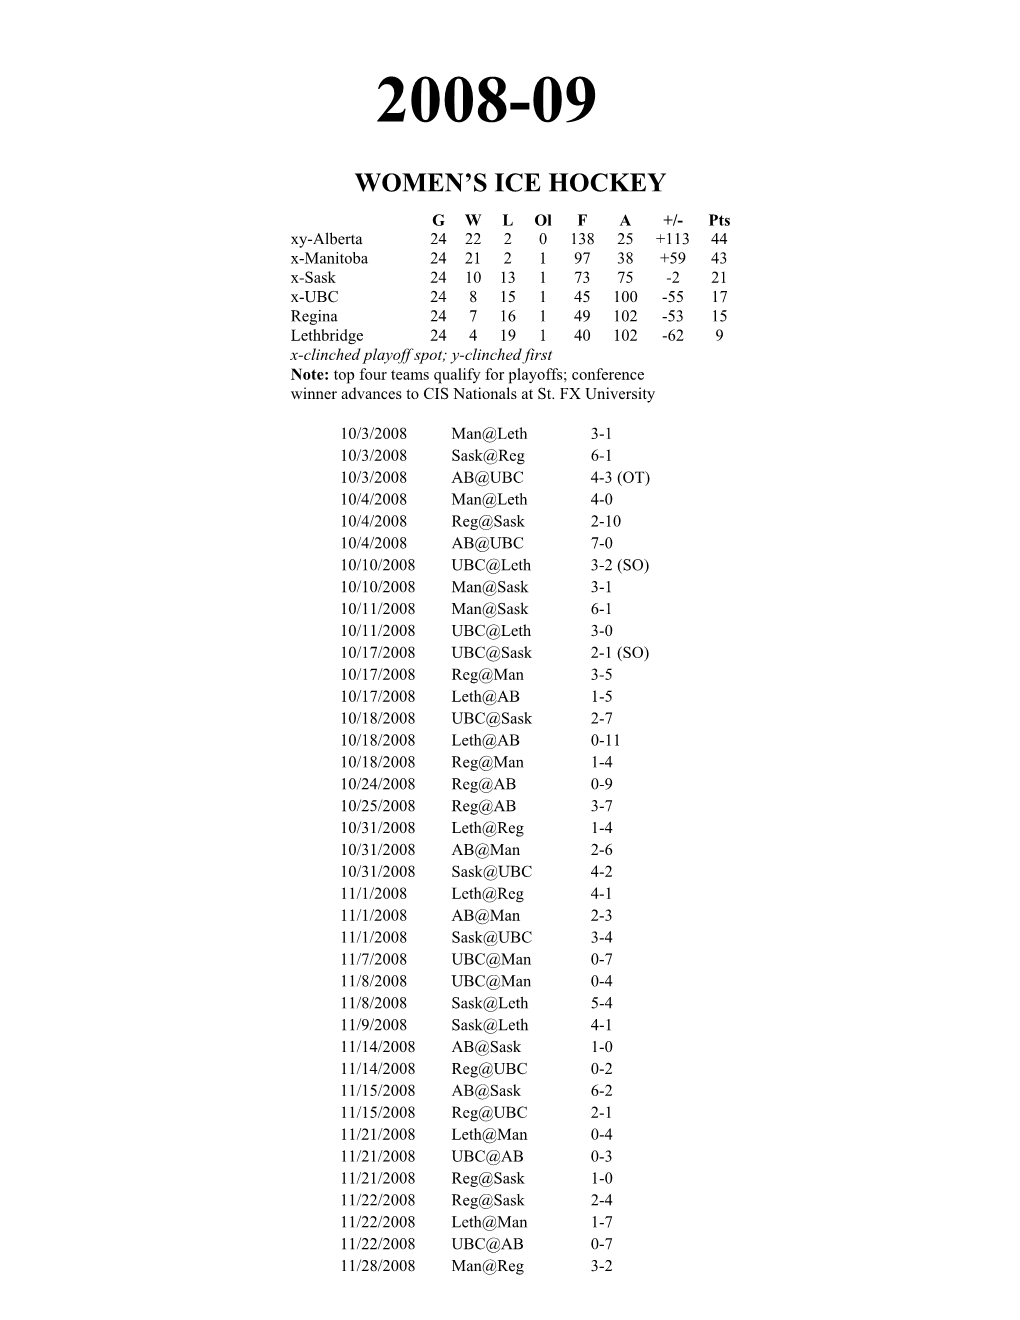 2008-09 Women's Ice Hockey